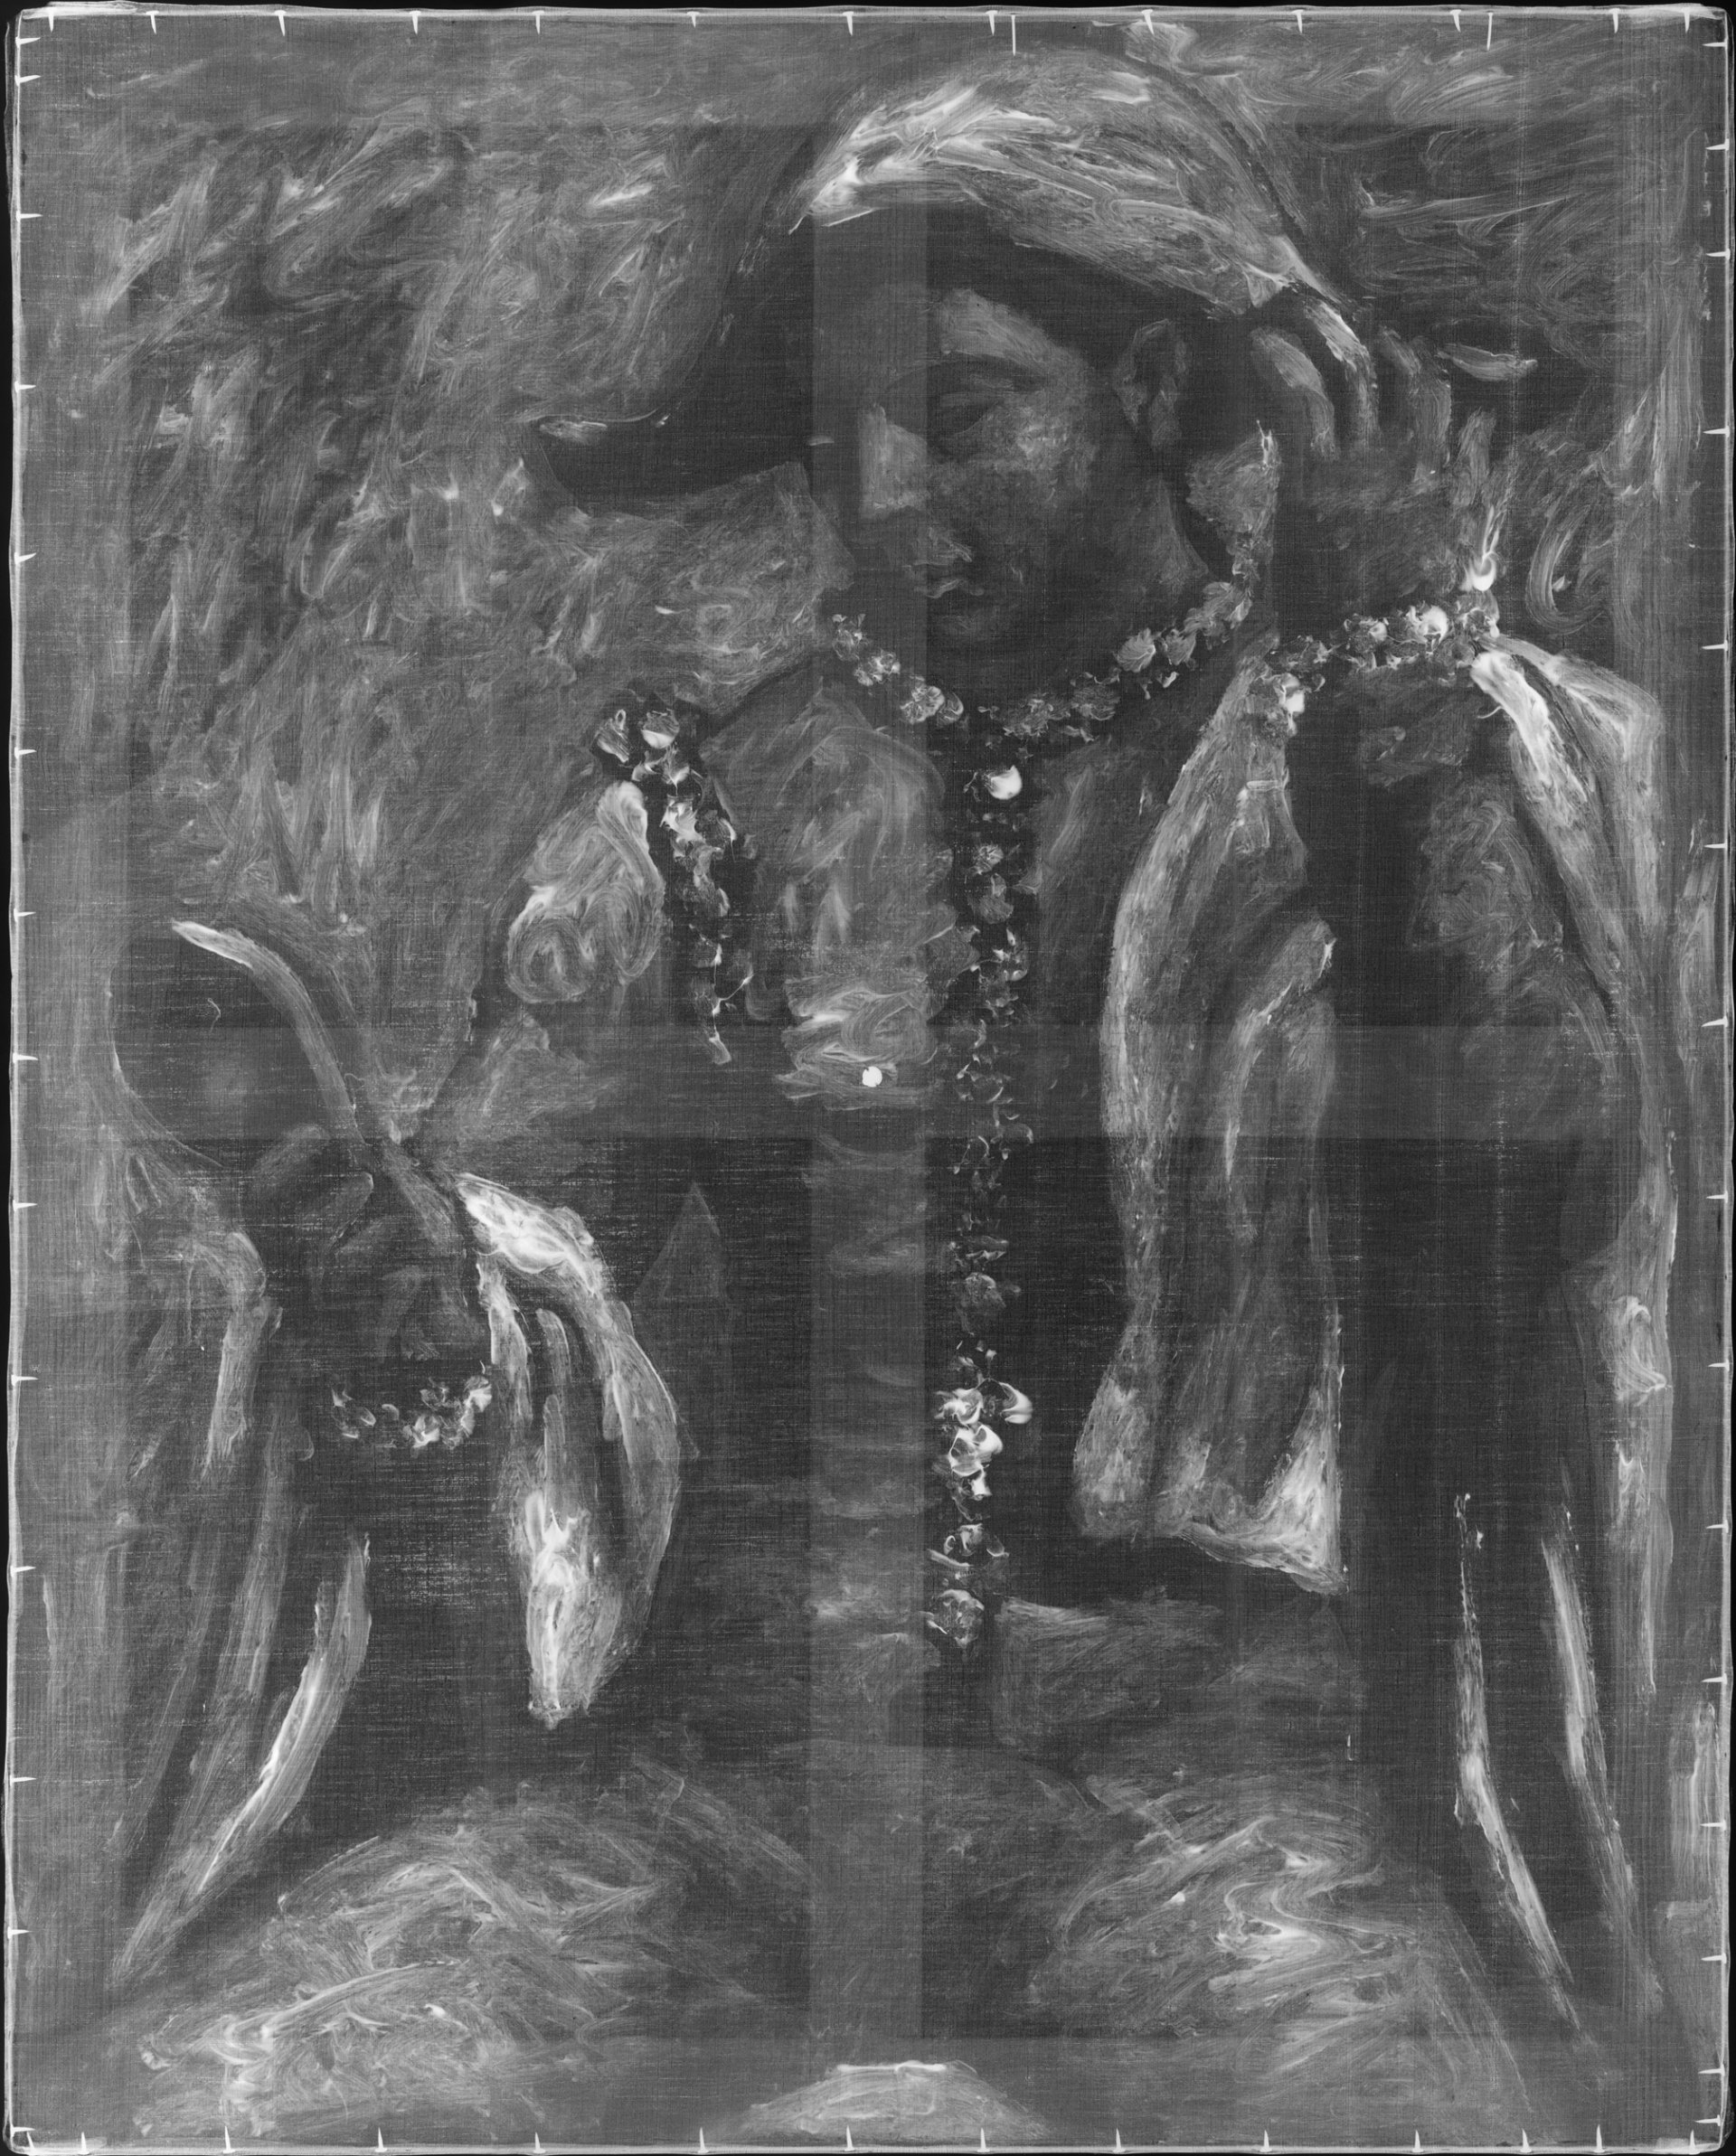 Imagen radiográfica de la obra "Arlequín con espejo", de Picasso